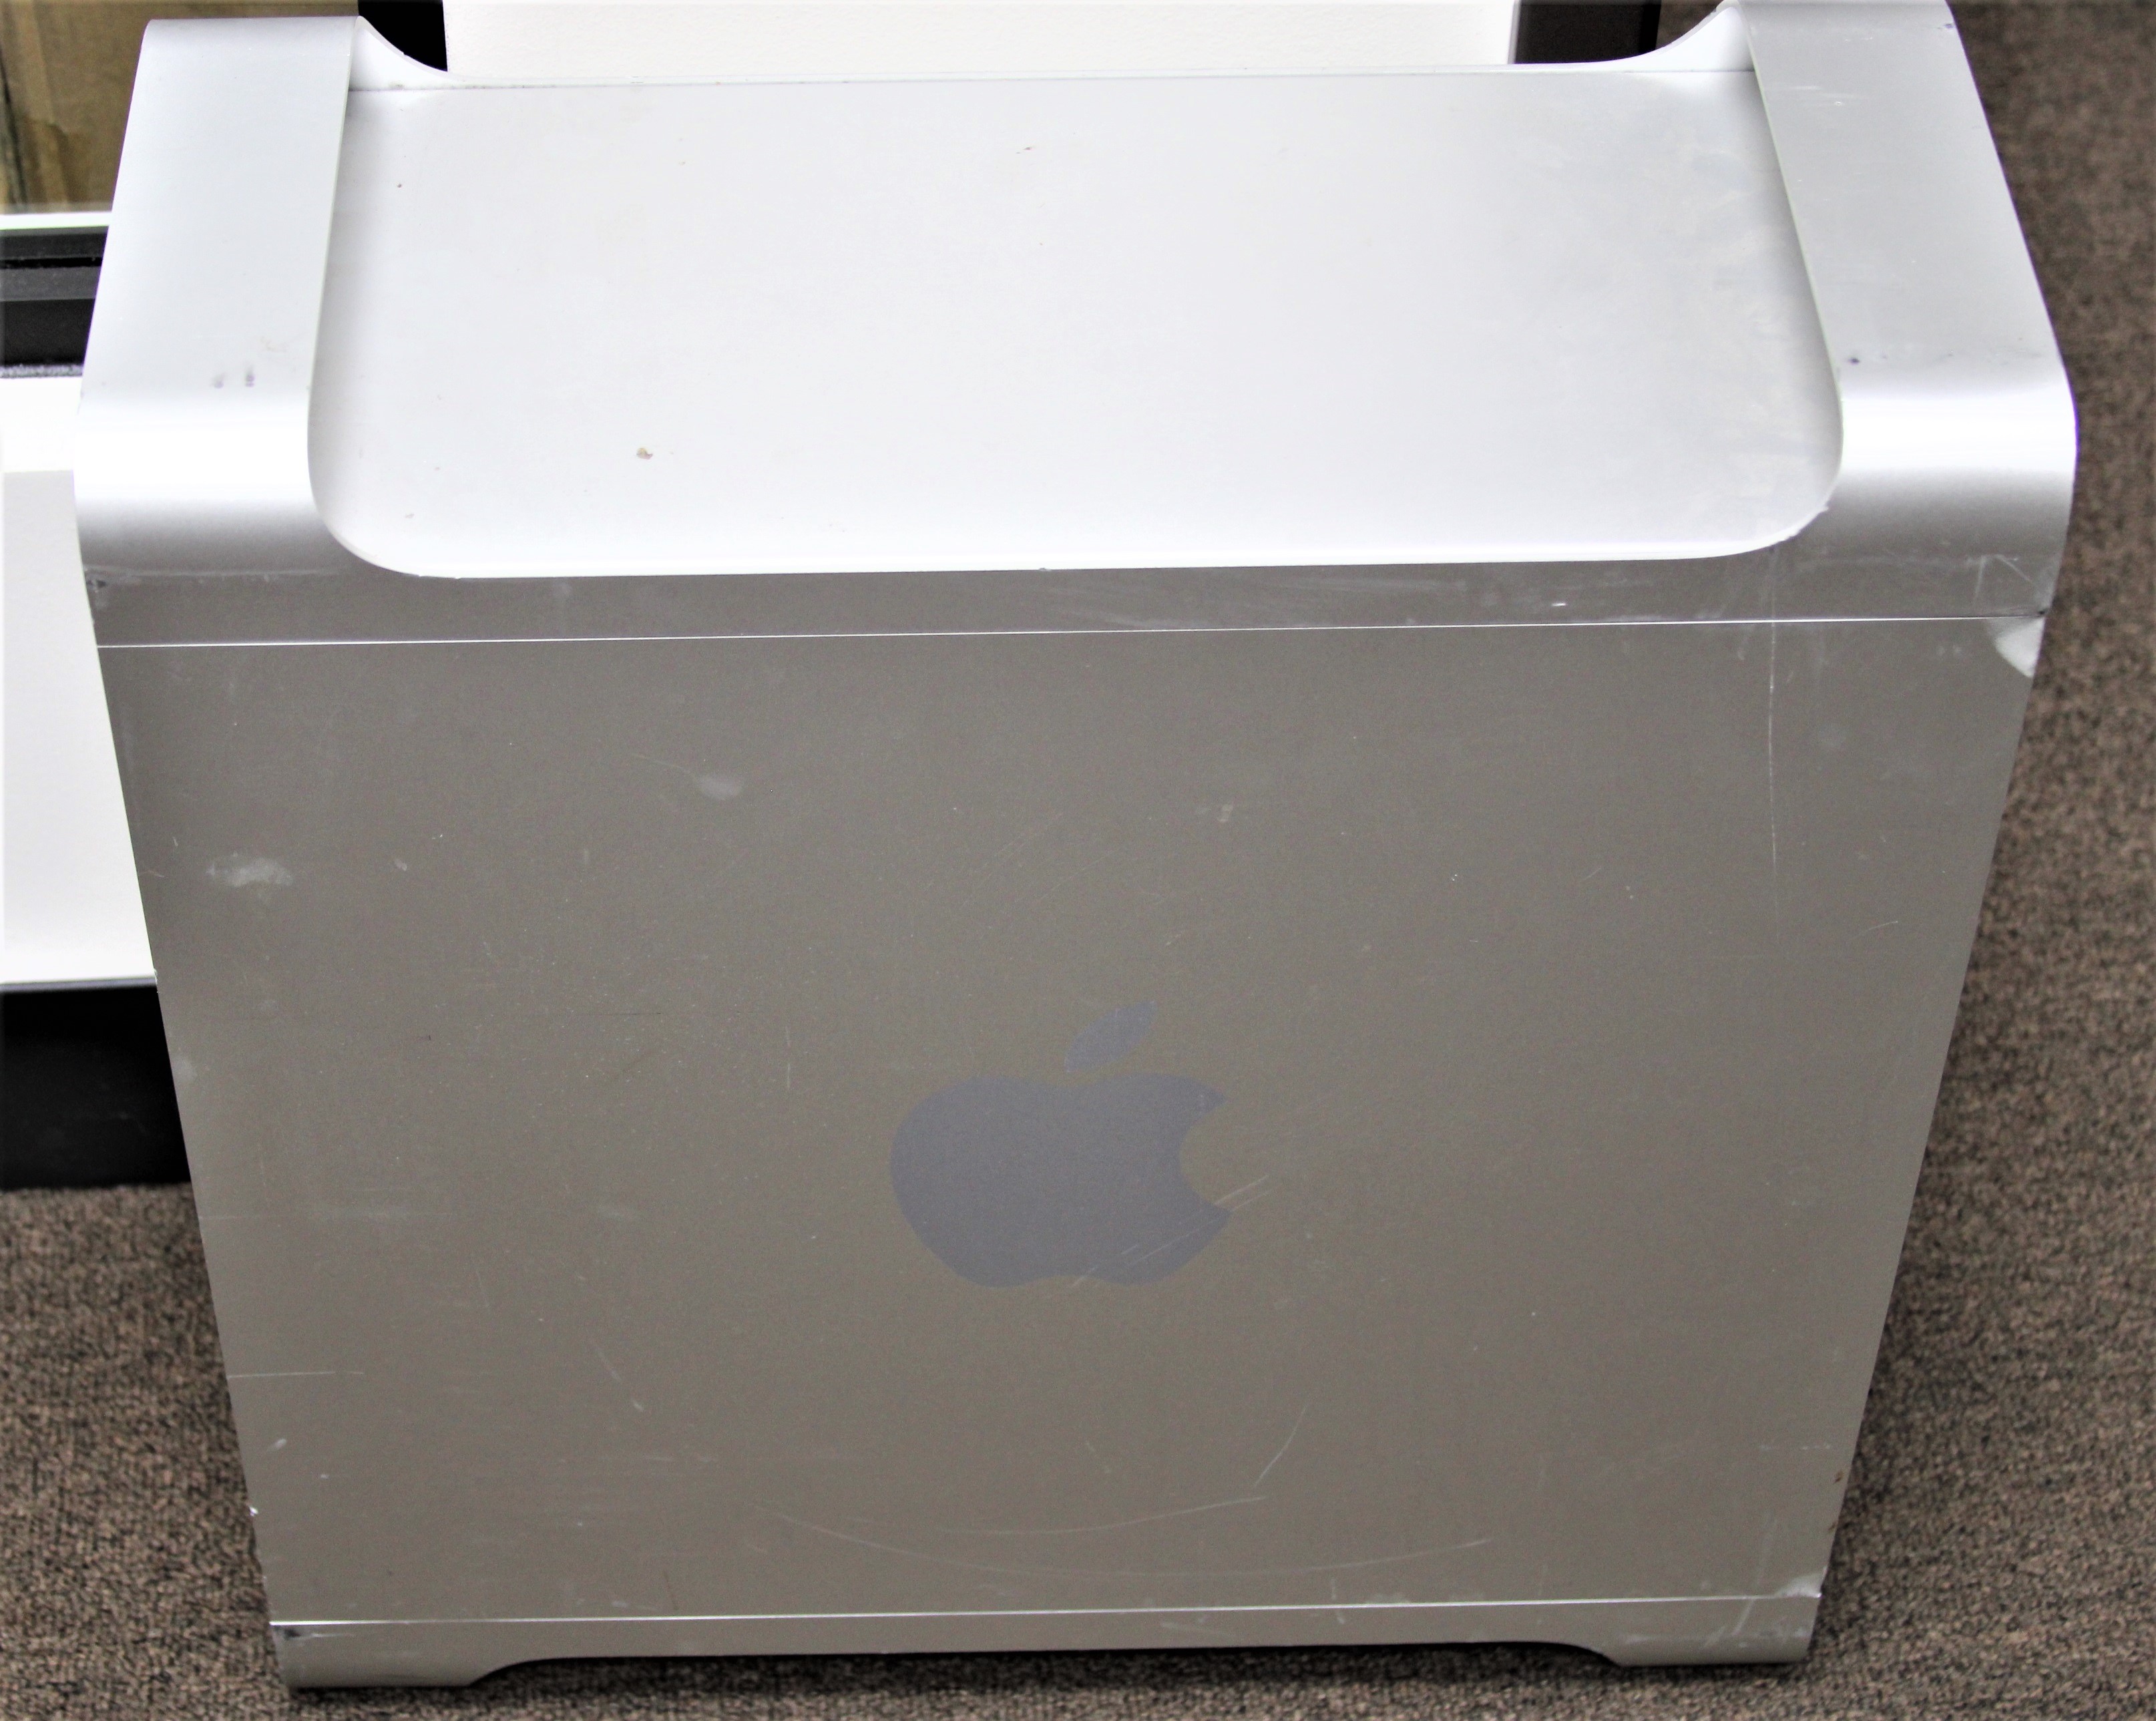 Apple Mac Pro TOWER 2009 A1289 INTEL XEON 2.26GHZ 6GB RAM 500GB HDD DESKTOP